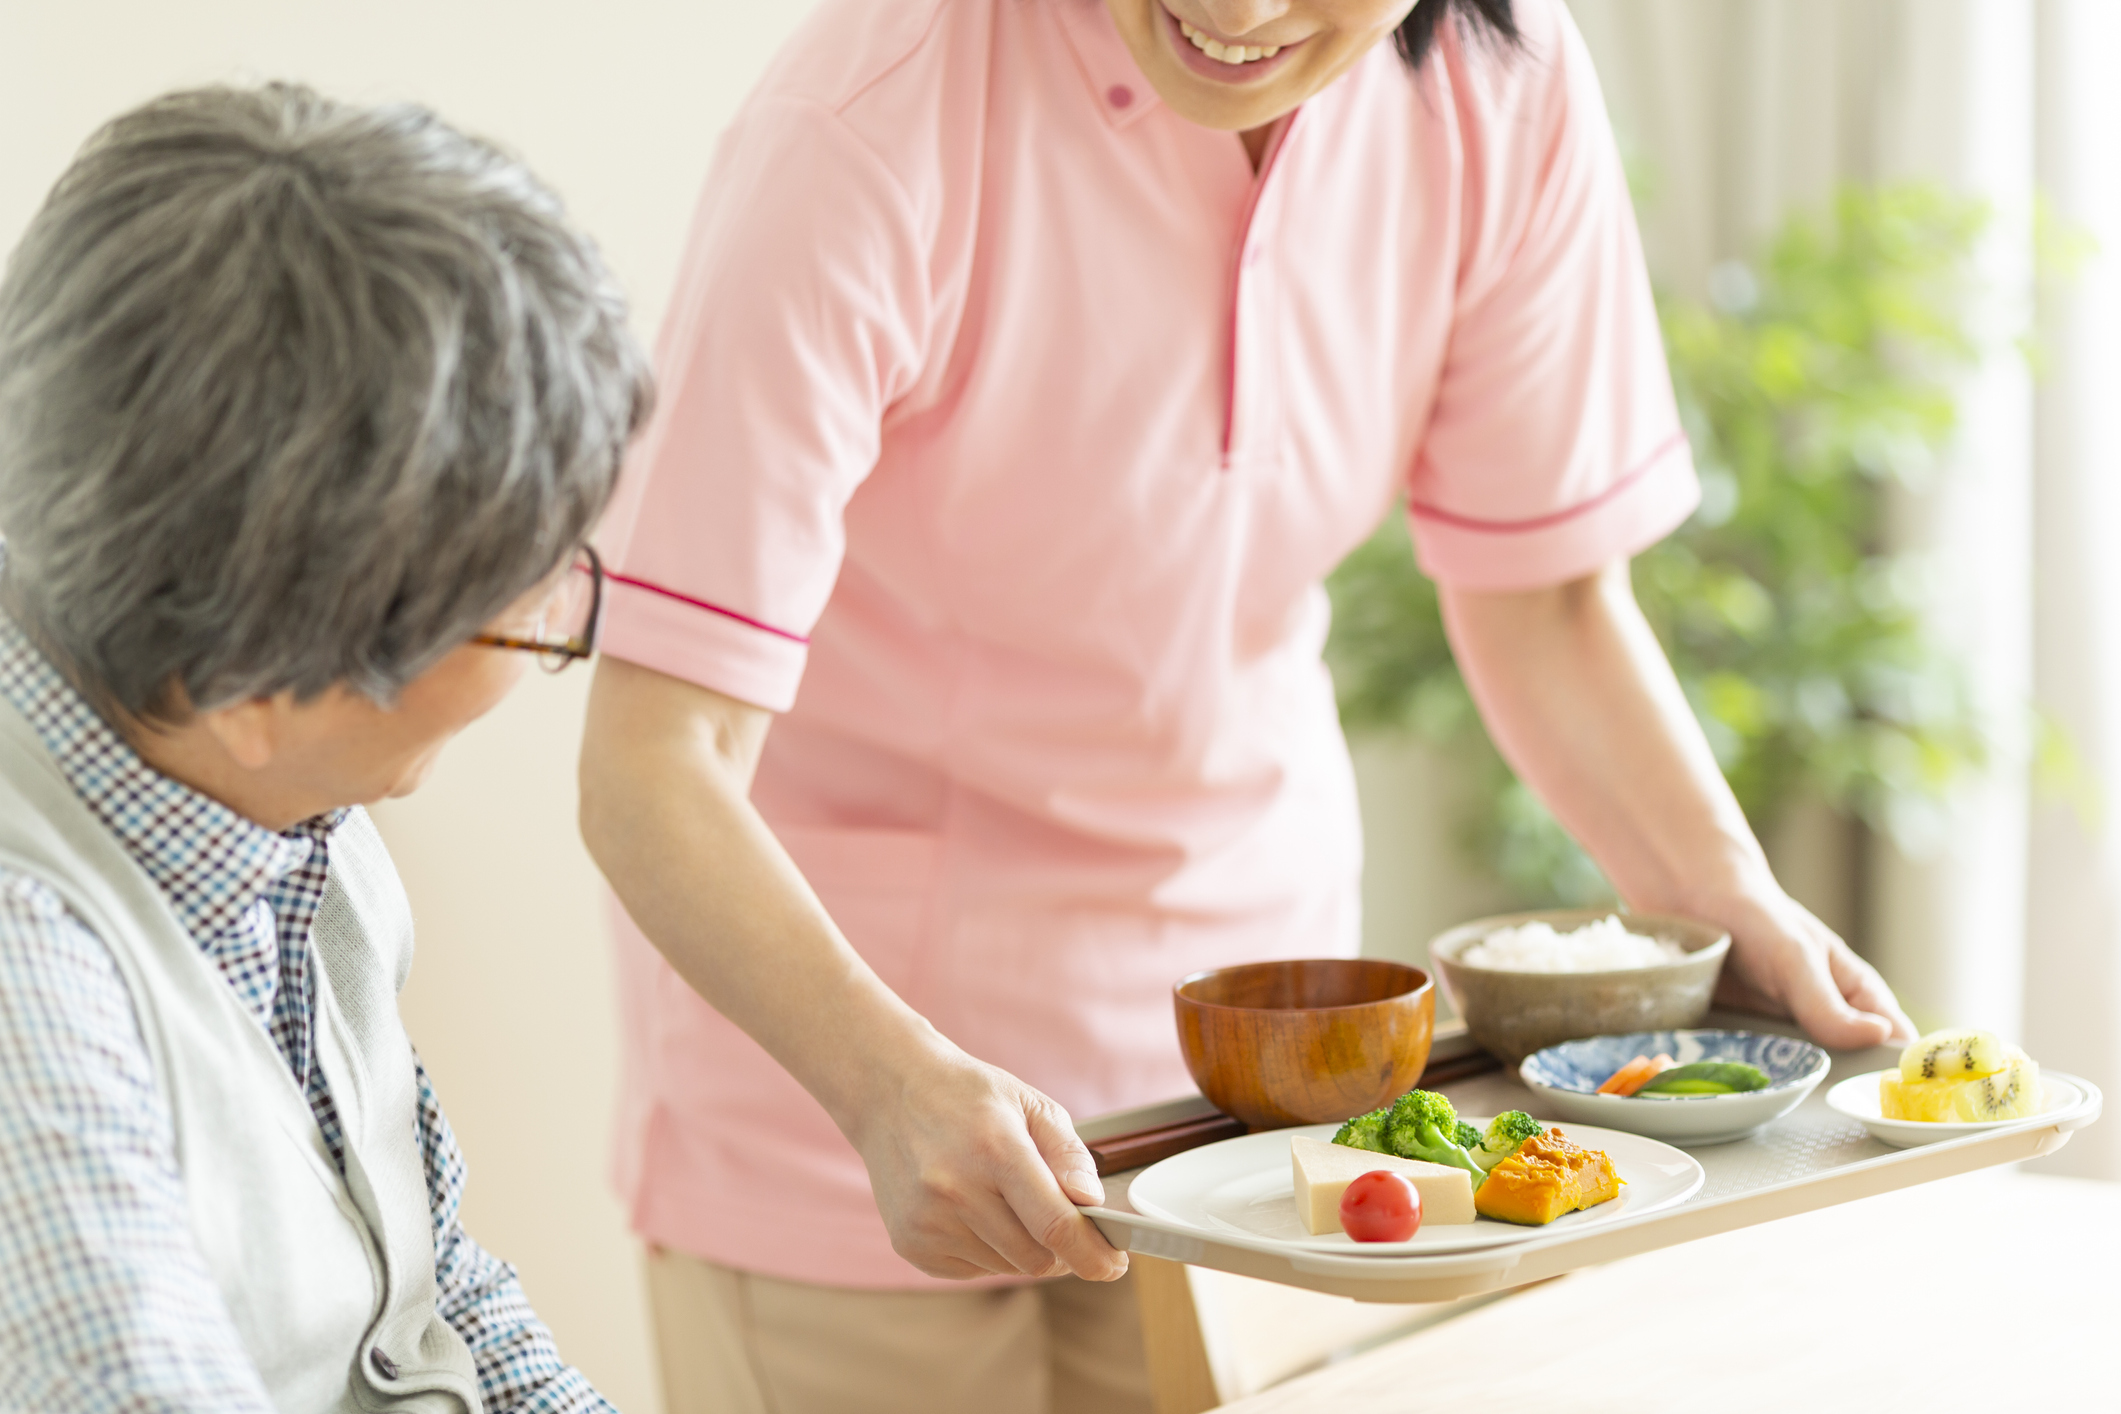 Caregiver preparing a meal